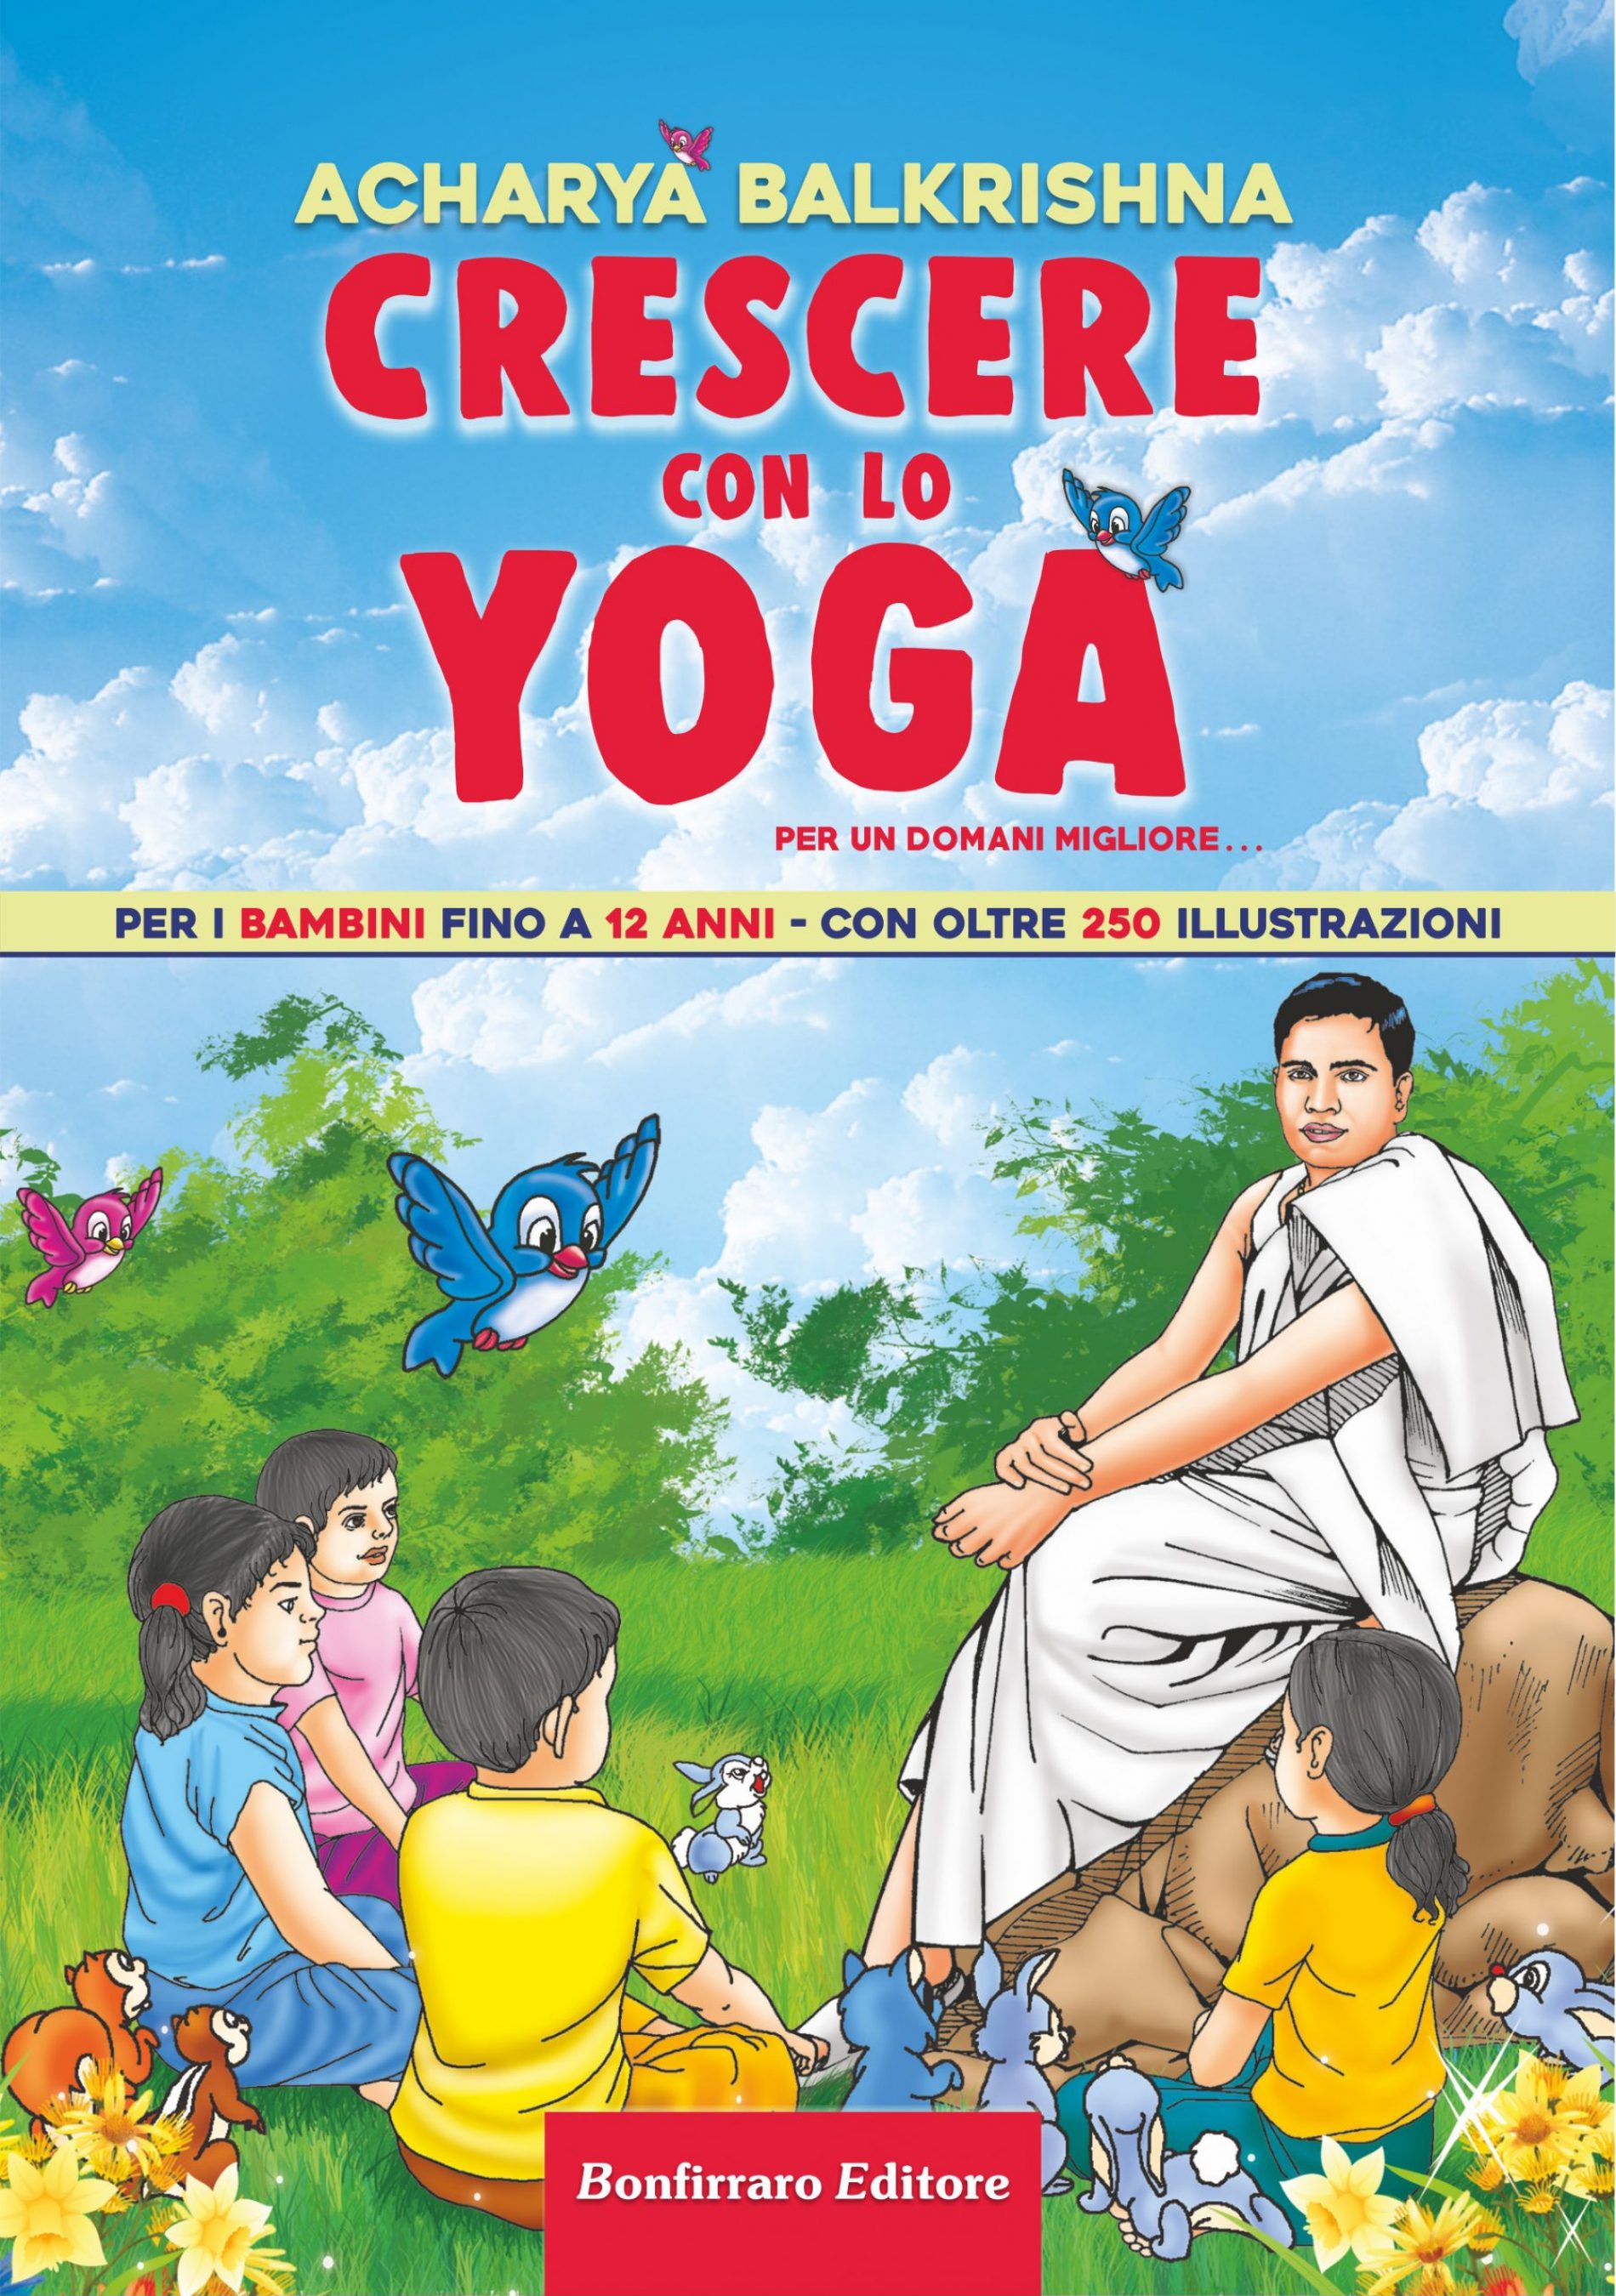 Libri. Dall’India il manuale Yoga del celebre guru che renderà forti i bambini.